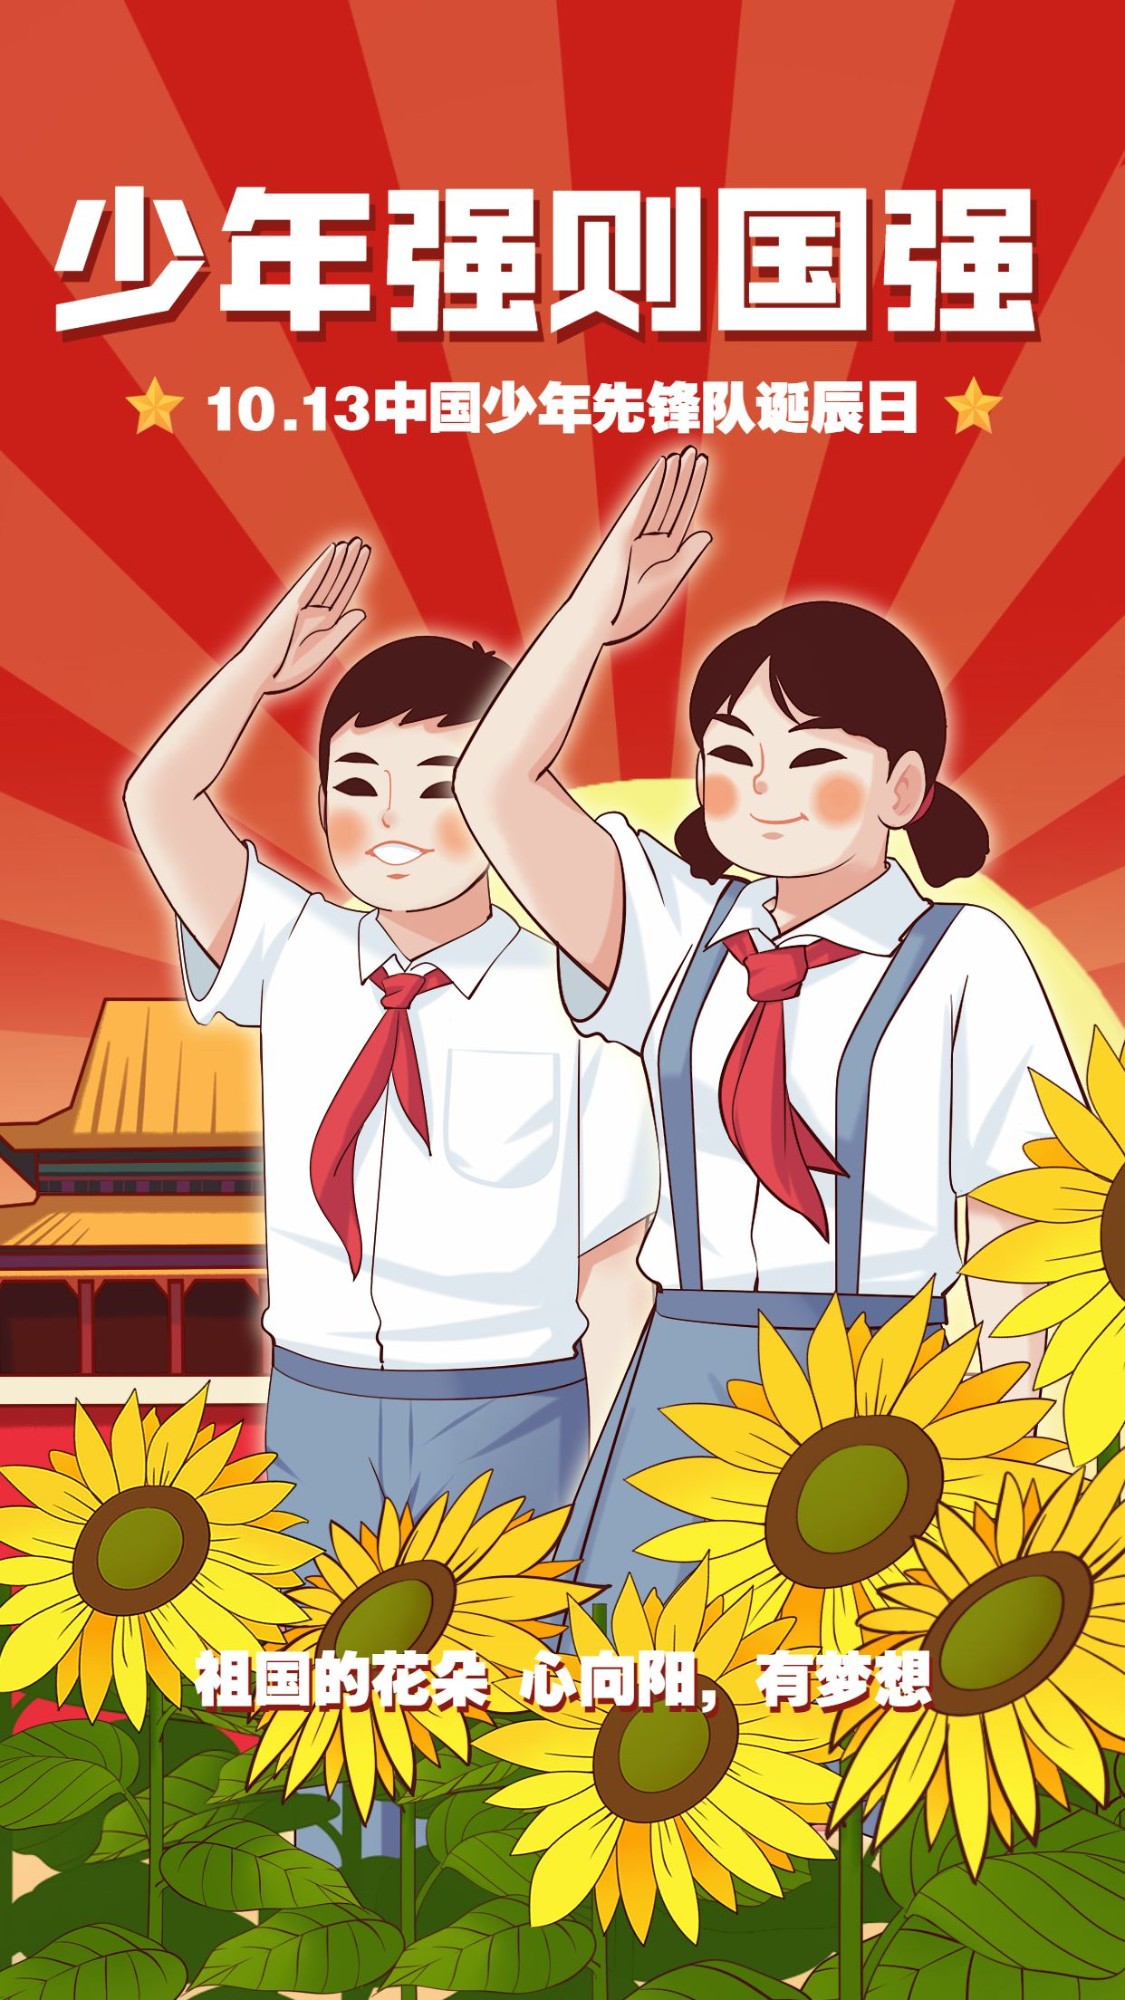 中国少年先锋队诞辰日学生手绘海报预览效果